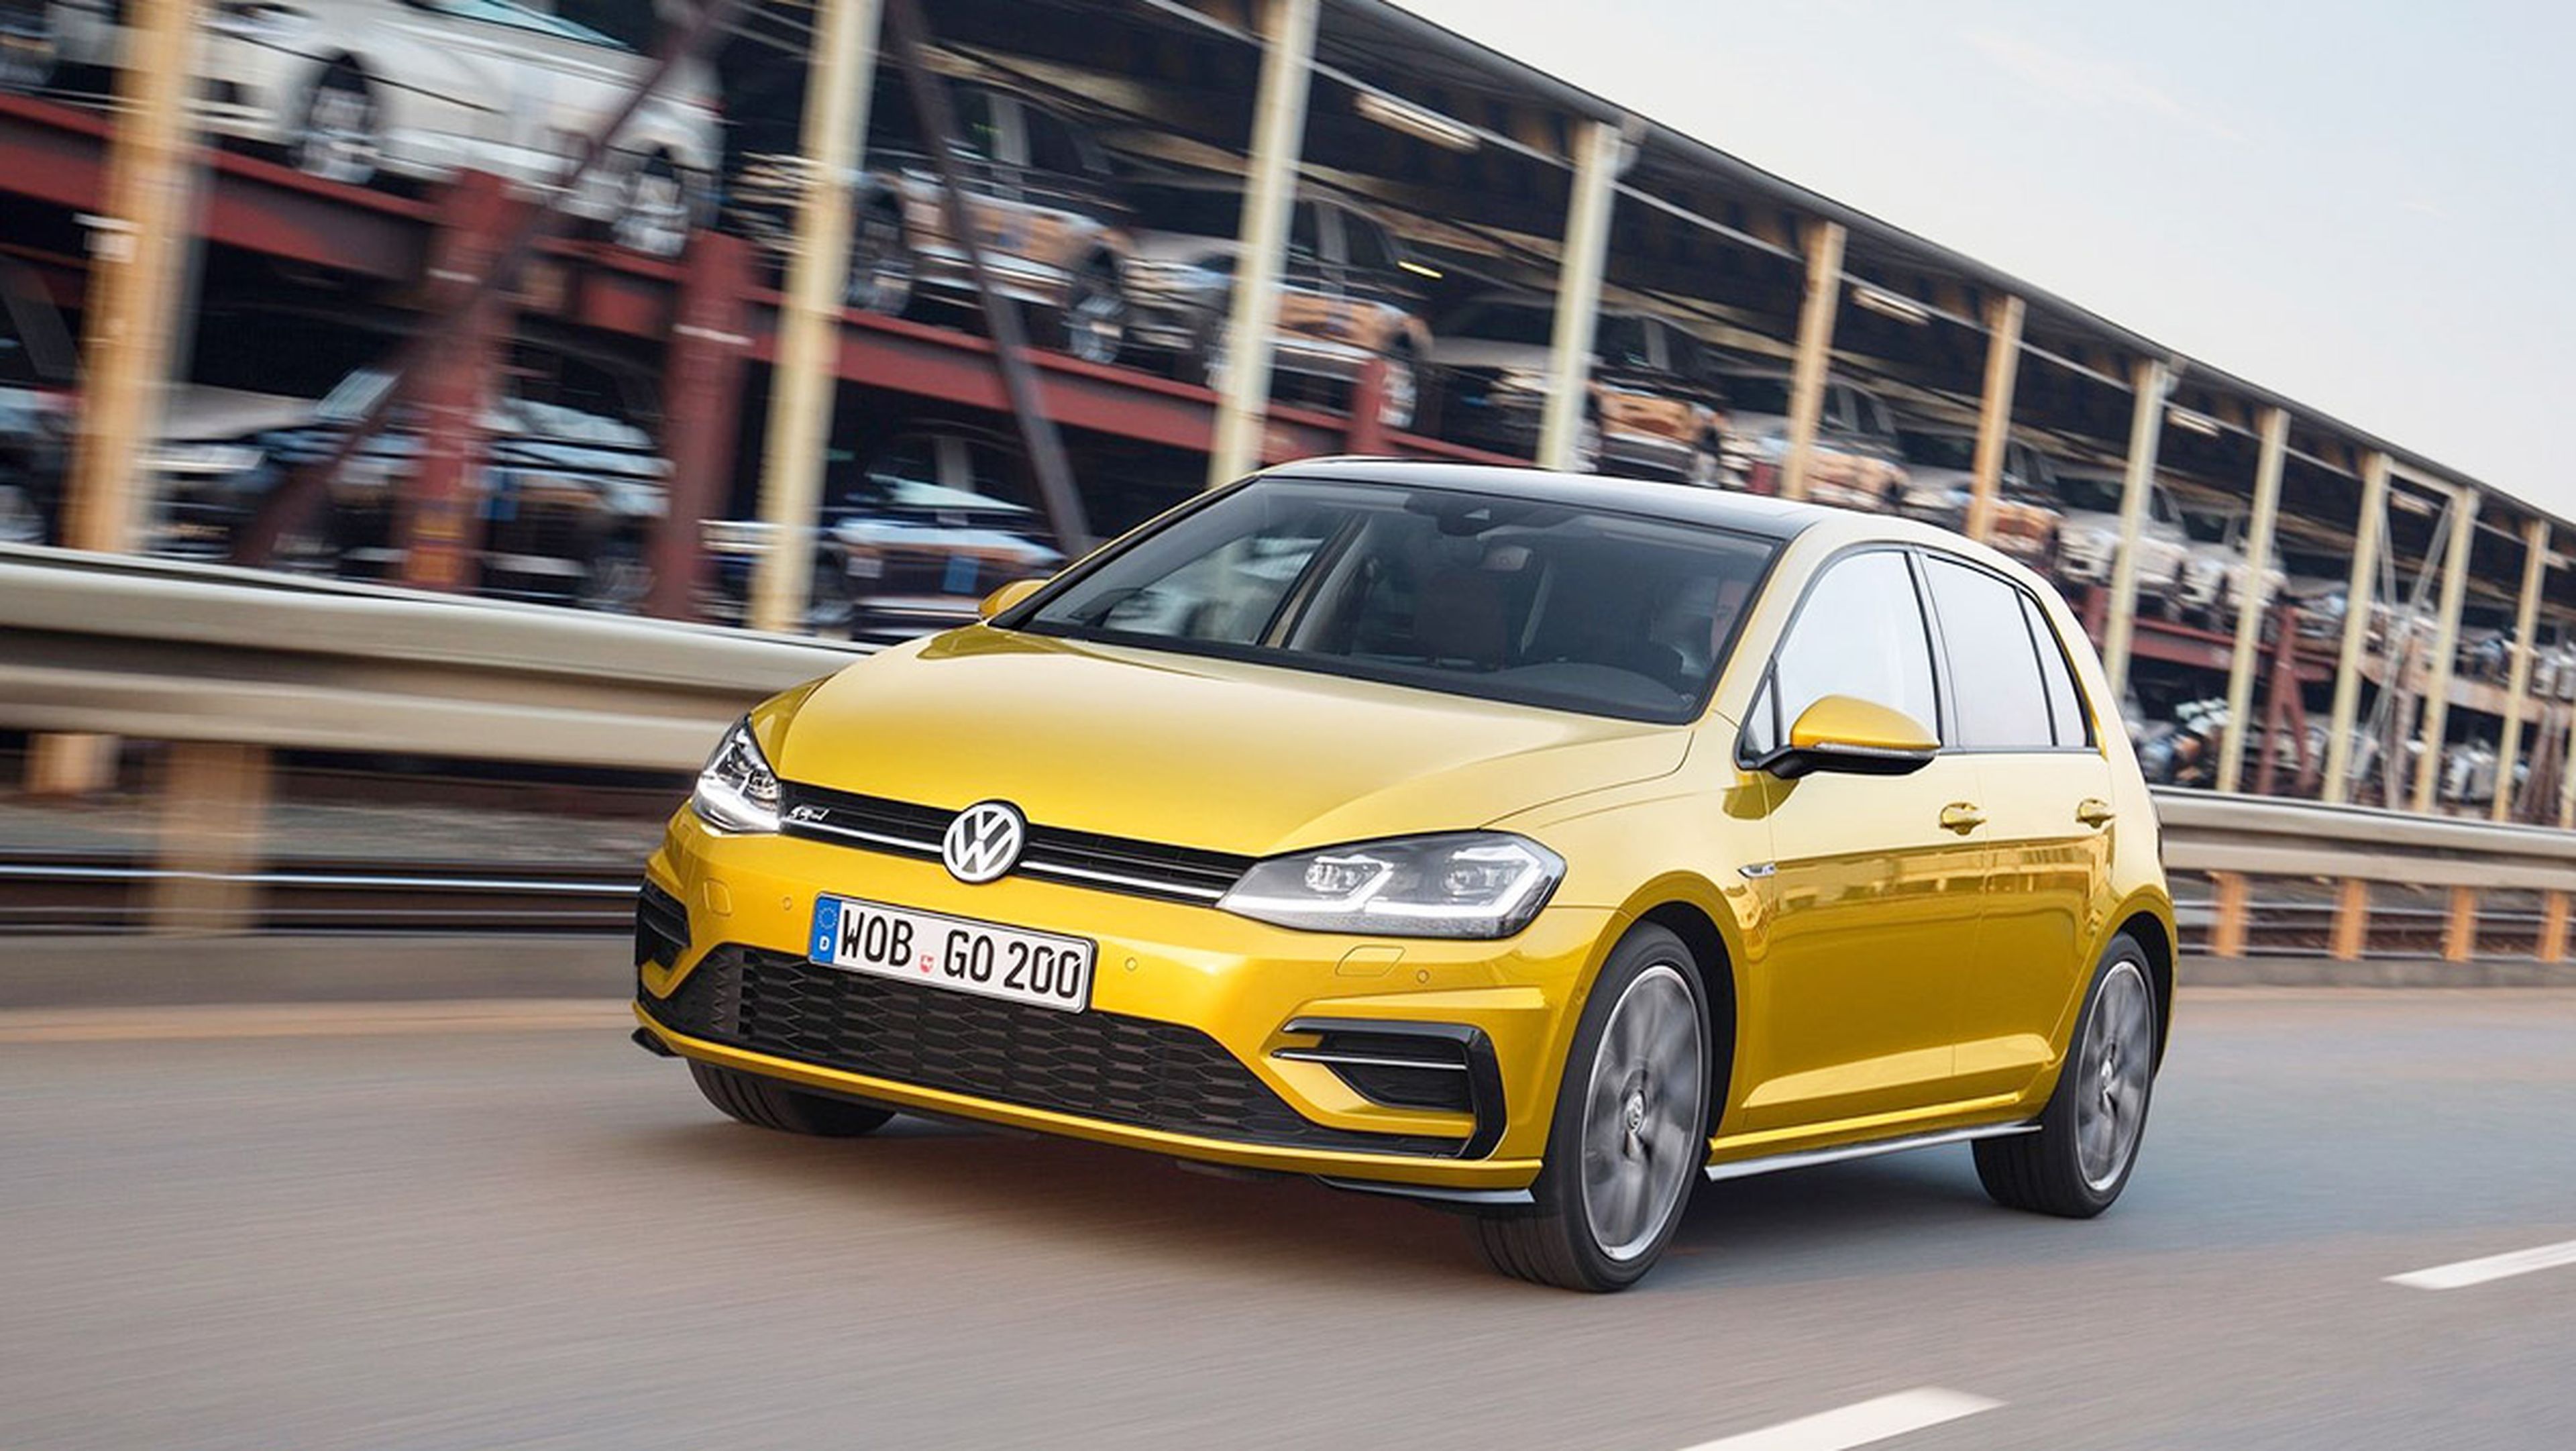 Coches nuevos entre 15.000 y 25.000 euros - Volkswagen Golf